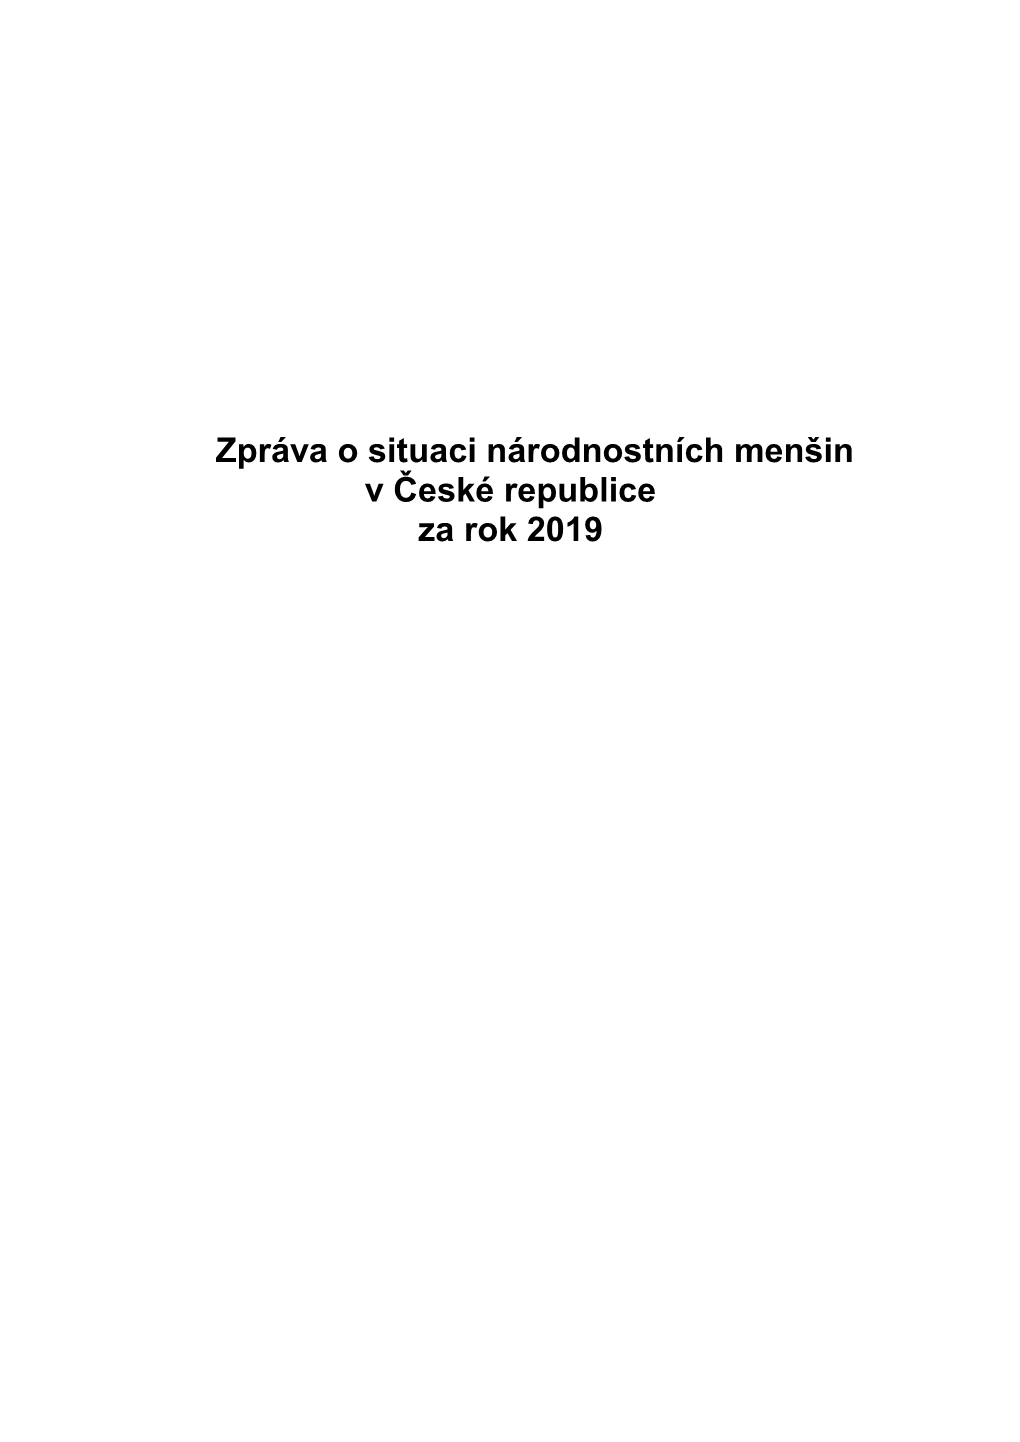 Zpráva O Situaci Národnostních Menšin V České Republice Za Rok 2019